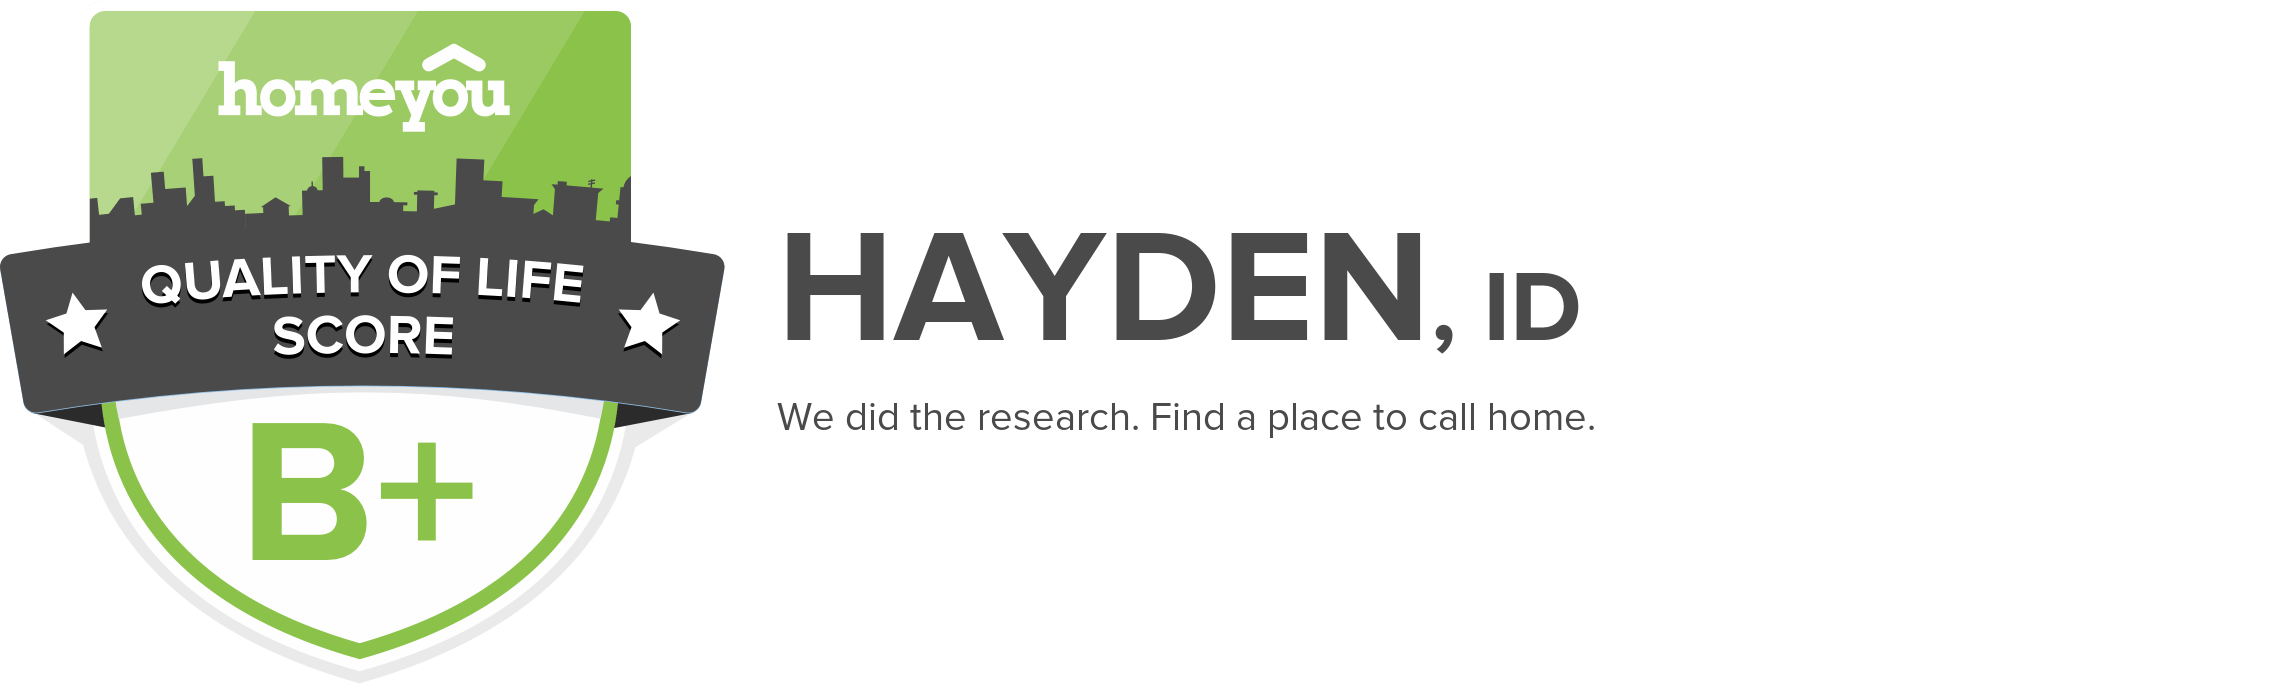 Hayden, ID